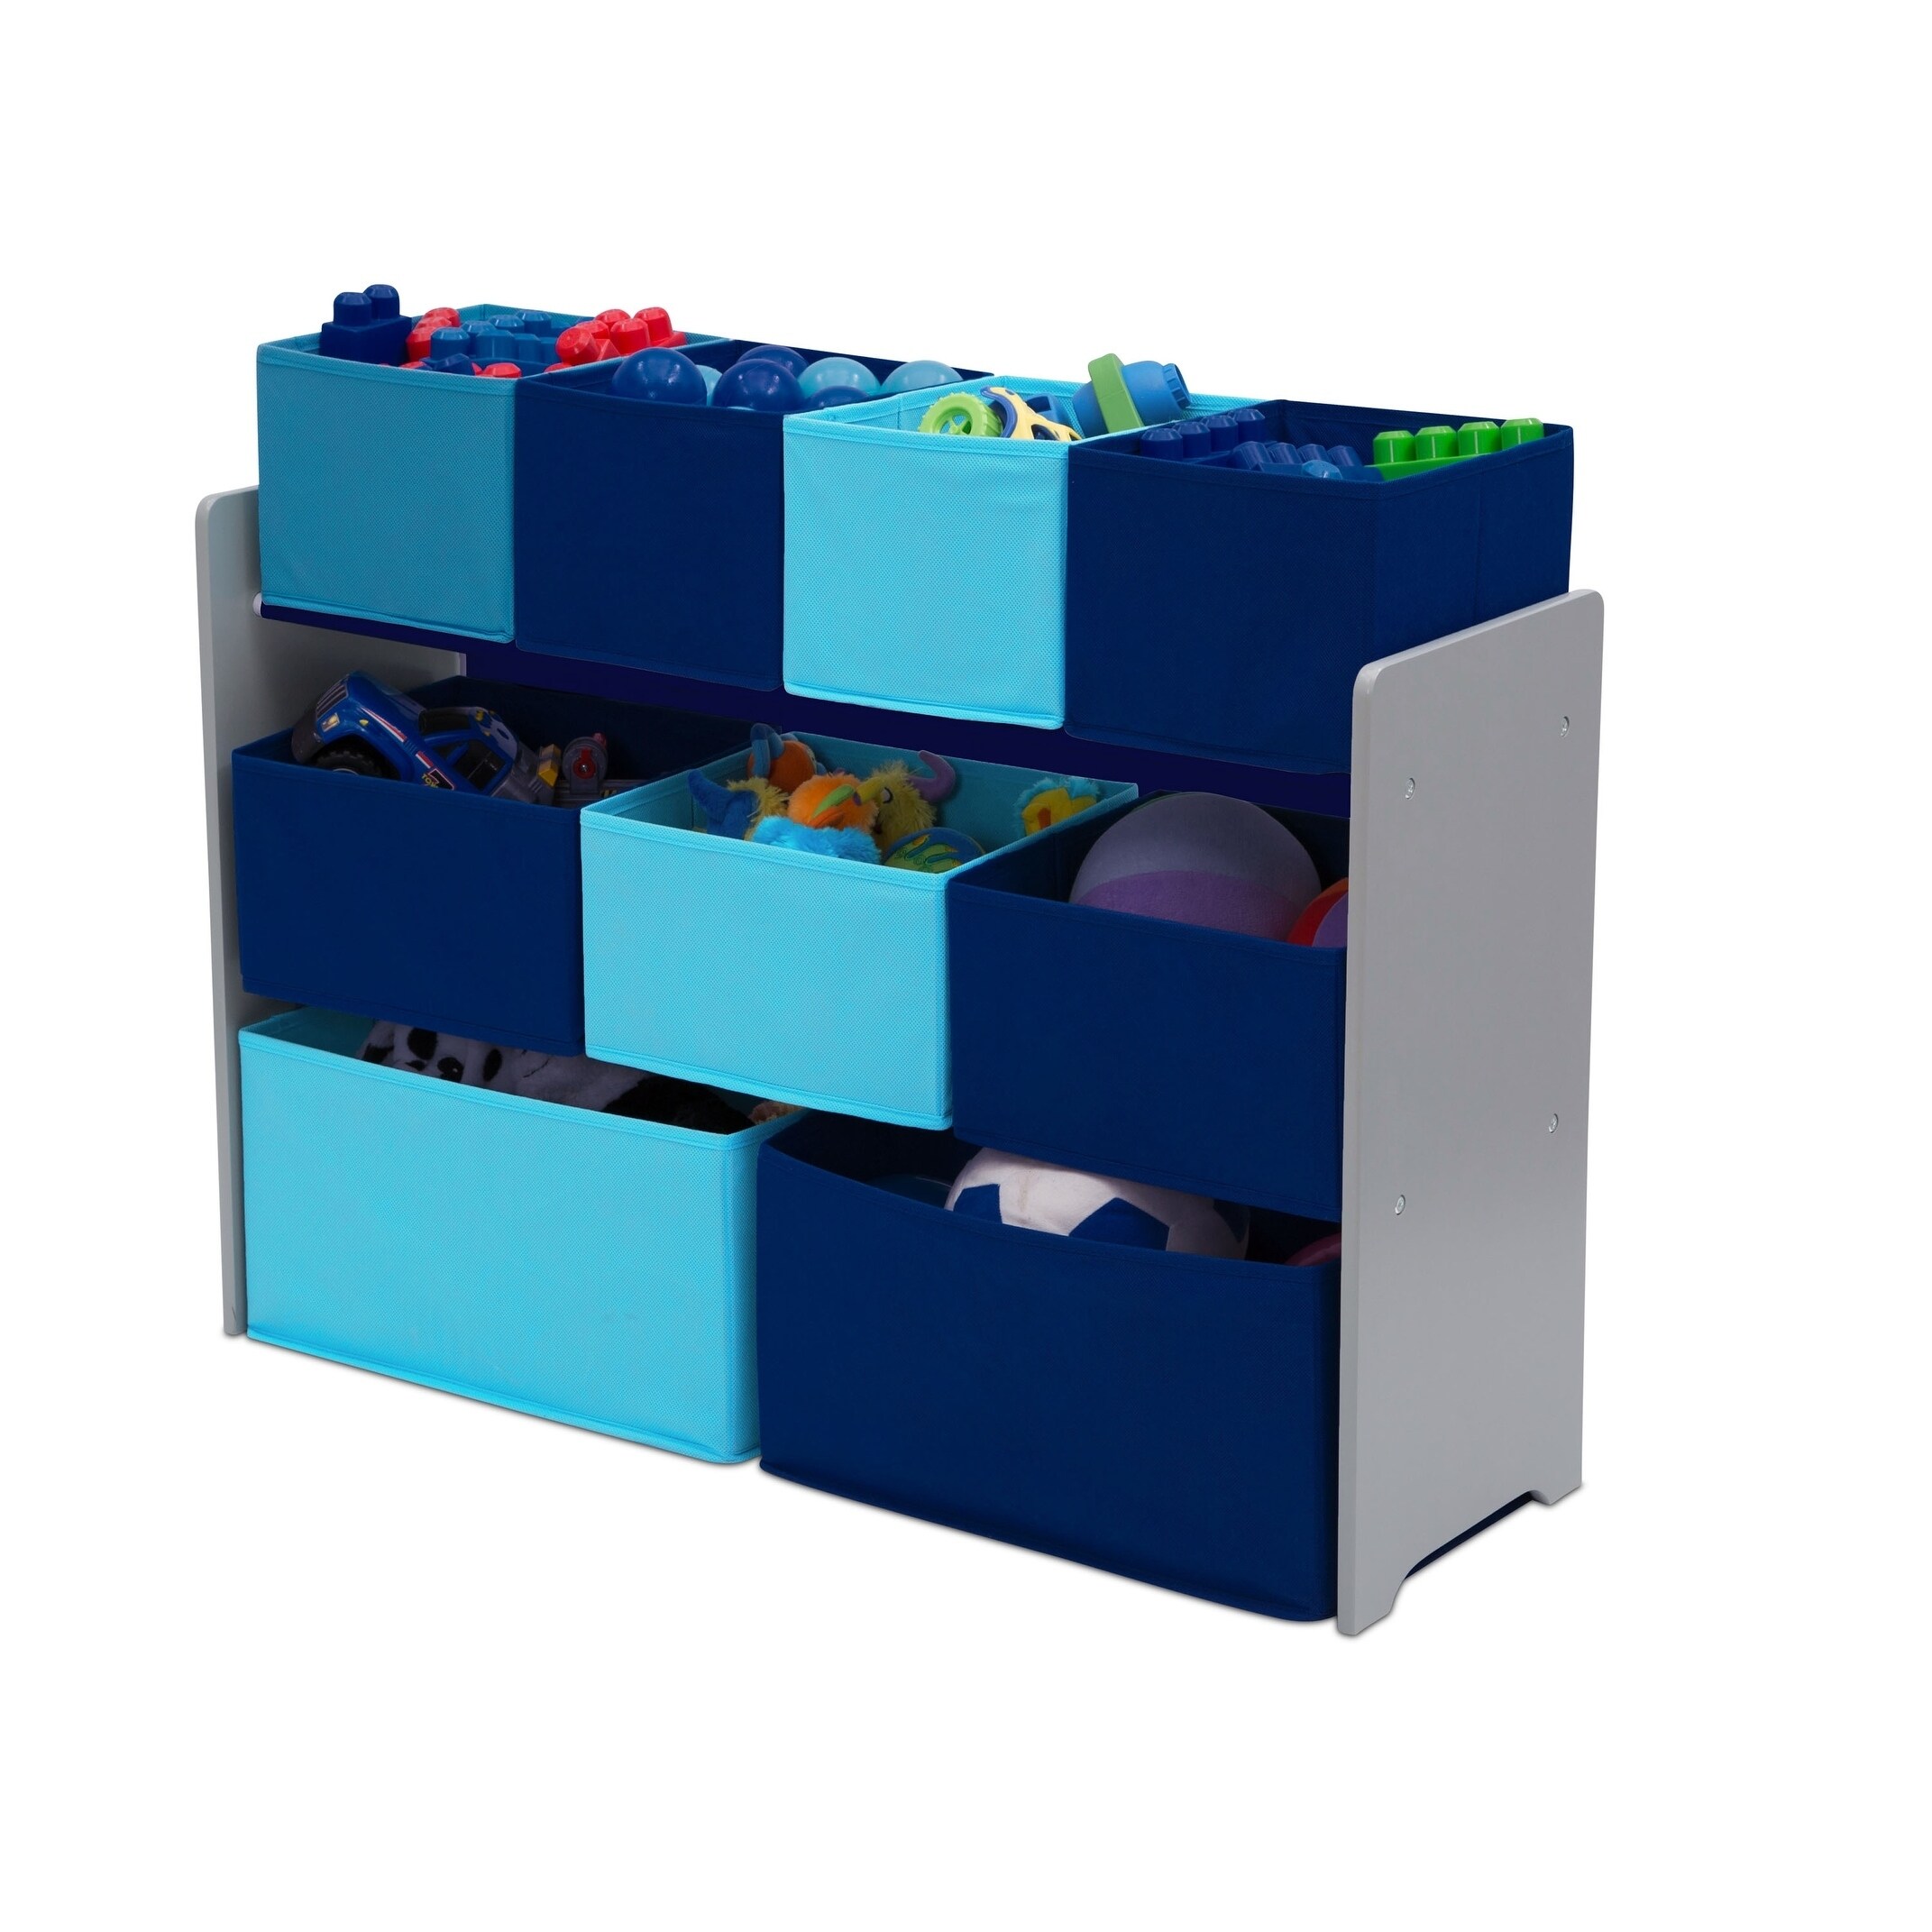 Grey/Blue Bins Details about   Delta Children Deluxe Multi-Bin Toy Organizer with Storage Bins 